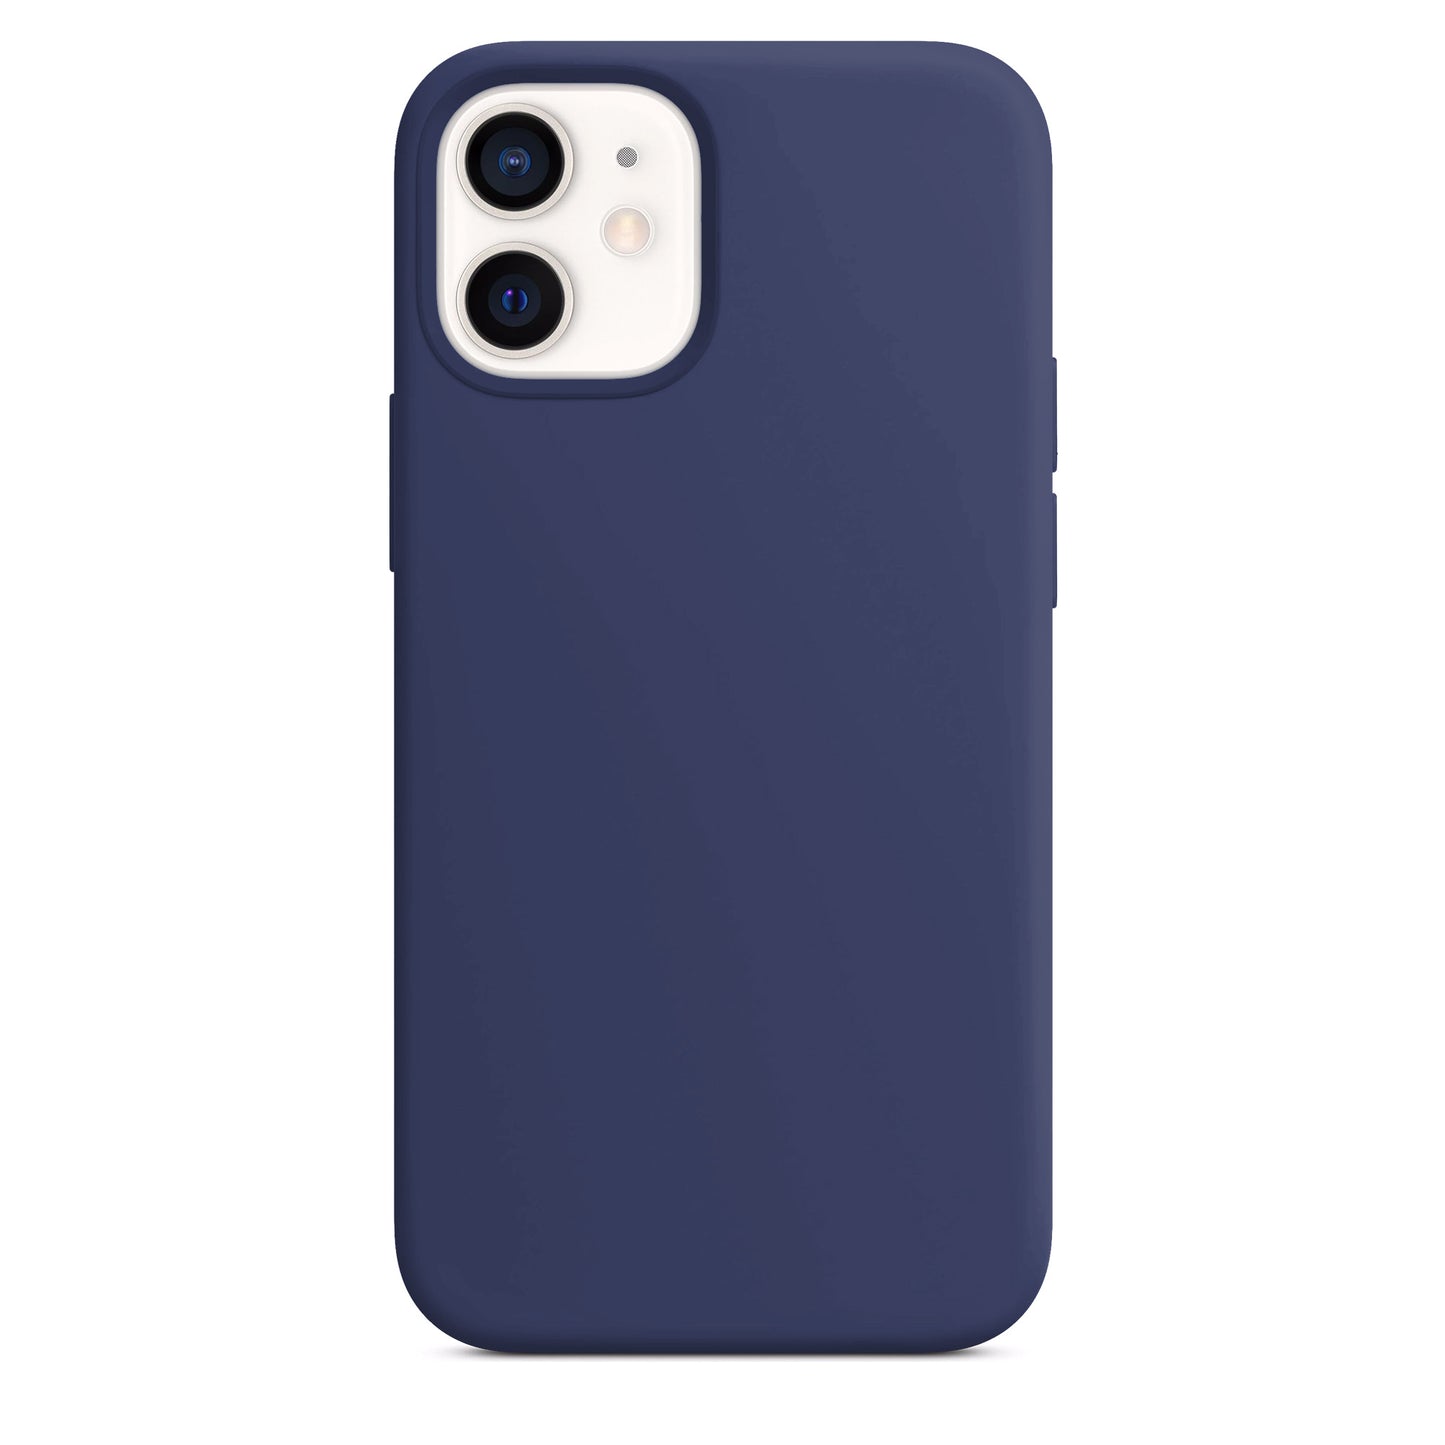 Coque en silicone bleu marine pour iPhone